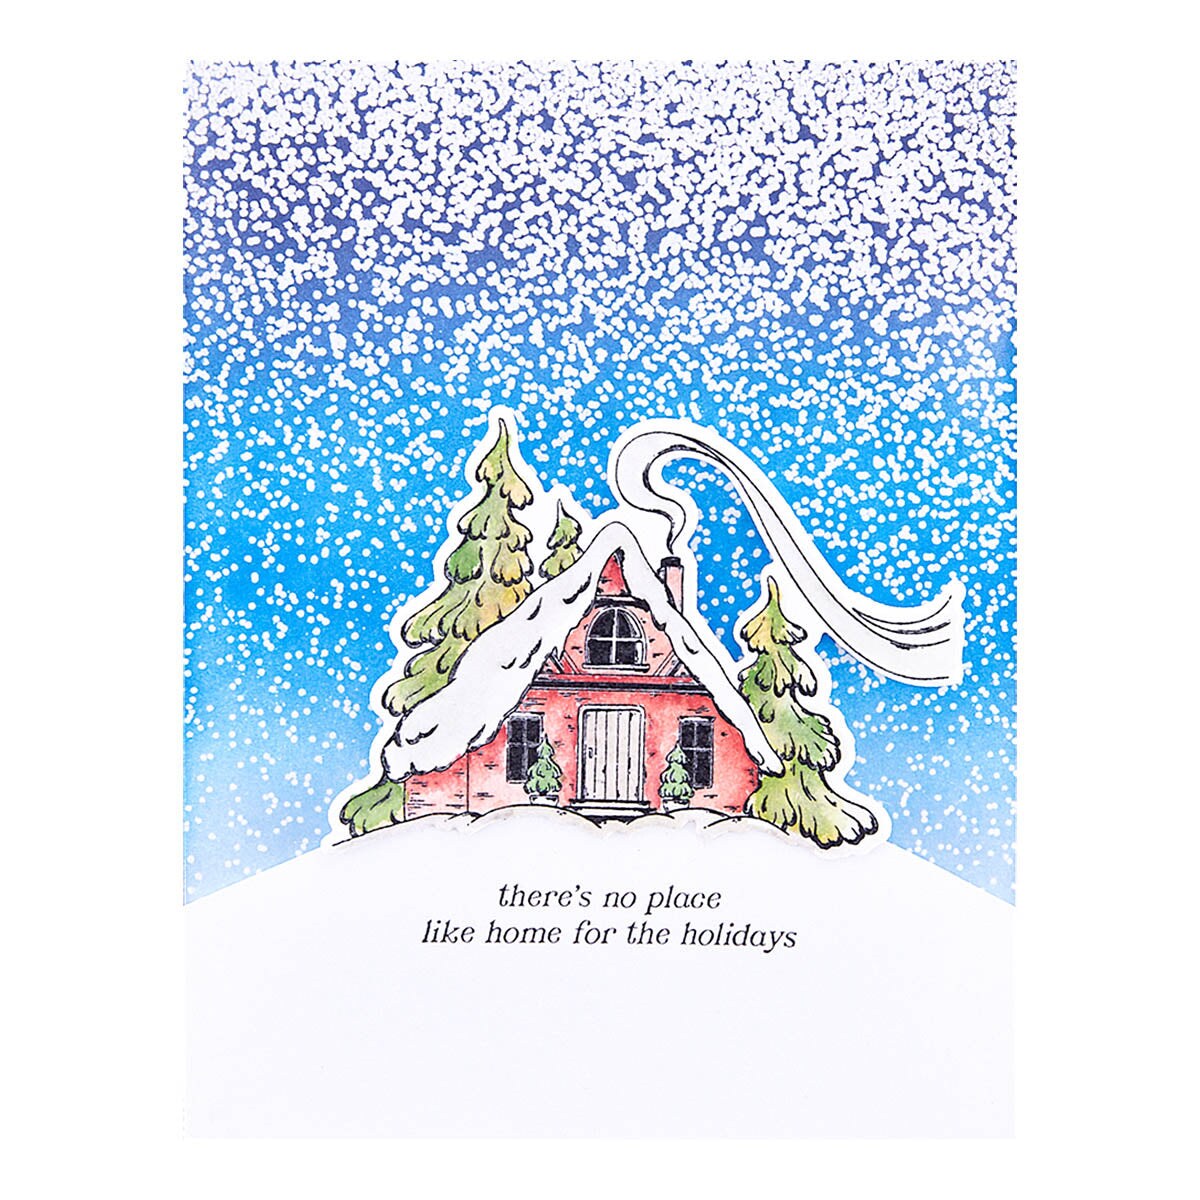 Spellbinders Winter Wonderland Etched Dies by Simon Hurley